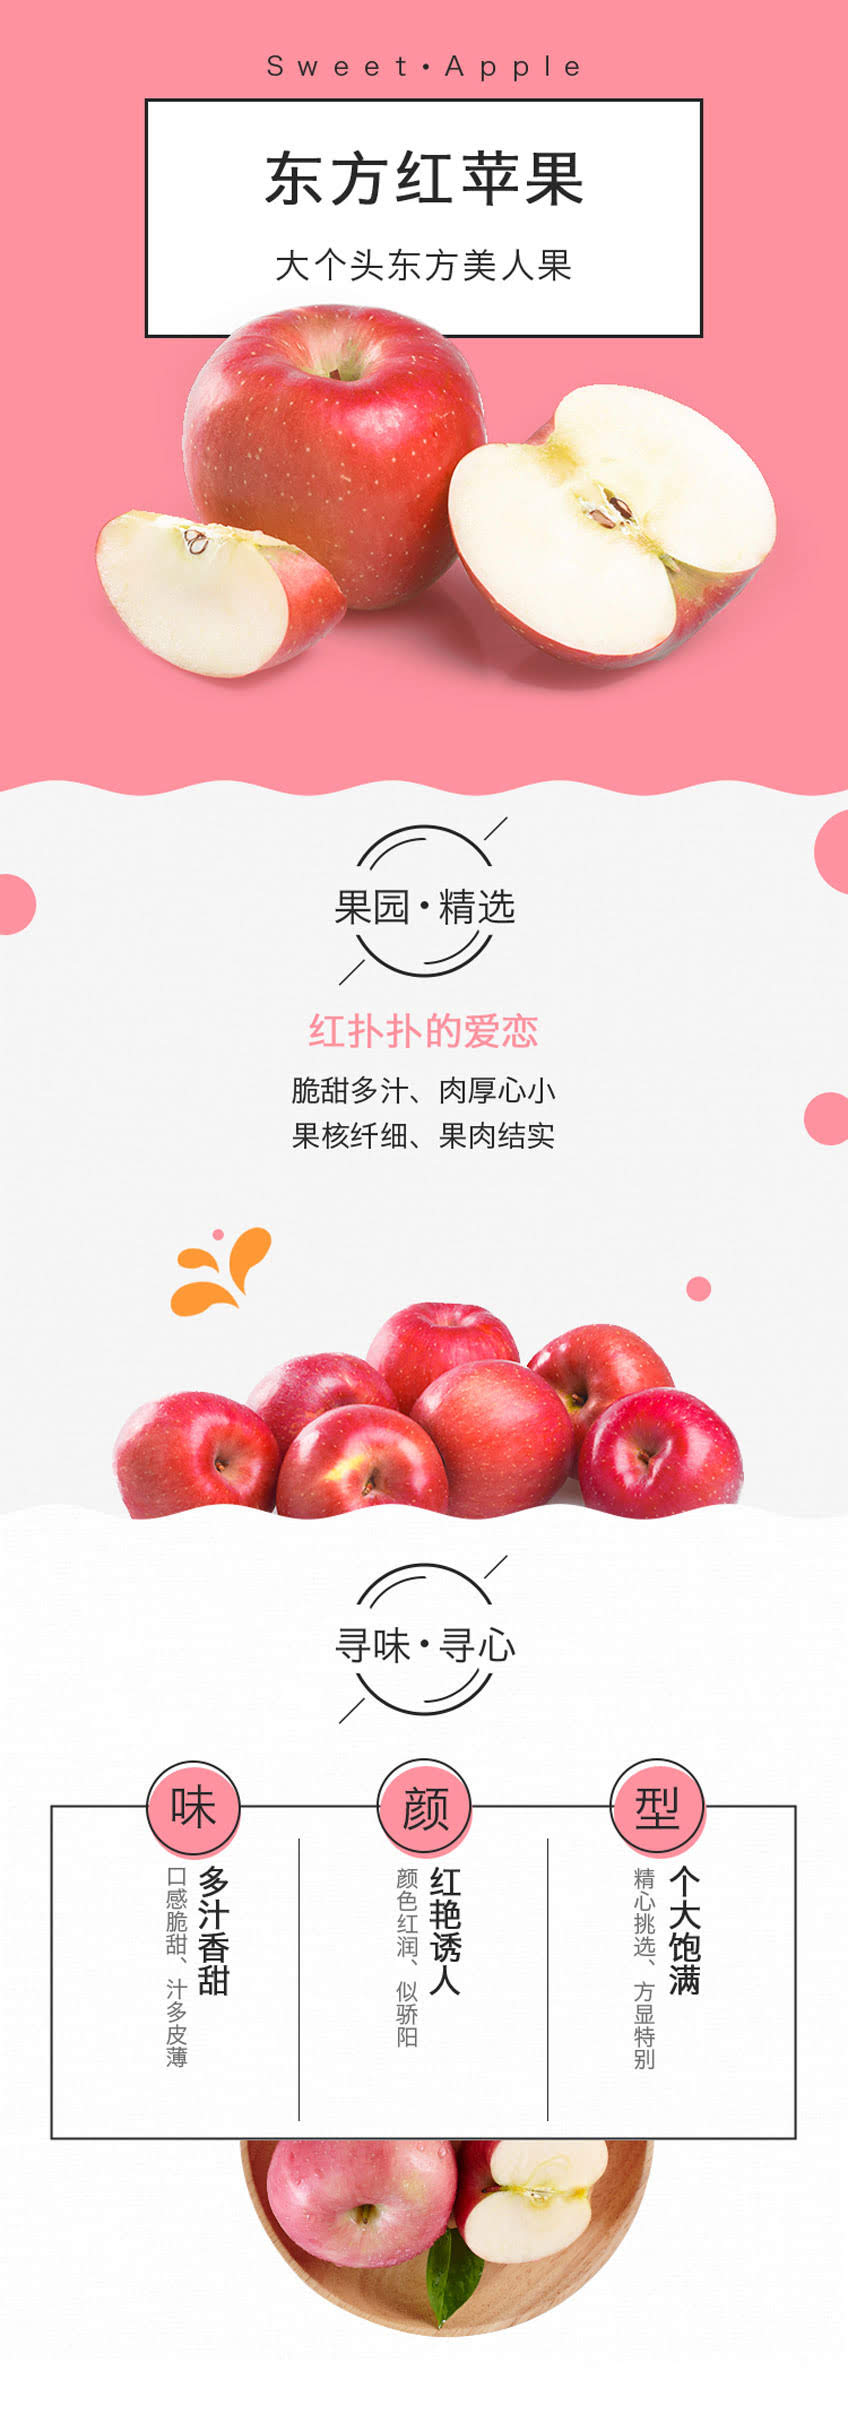 【百果园公司 招牌-东方红苹果(大 1.8-2斤